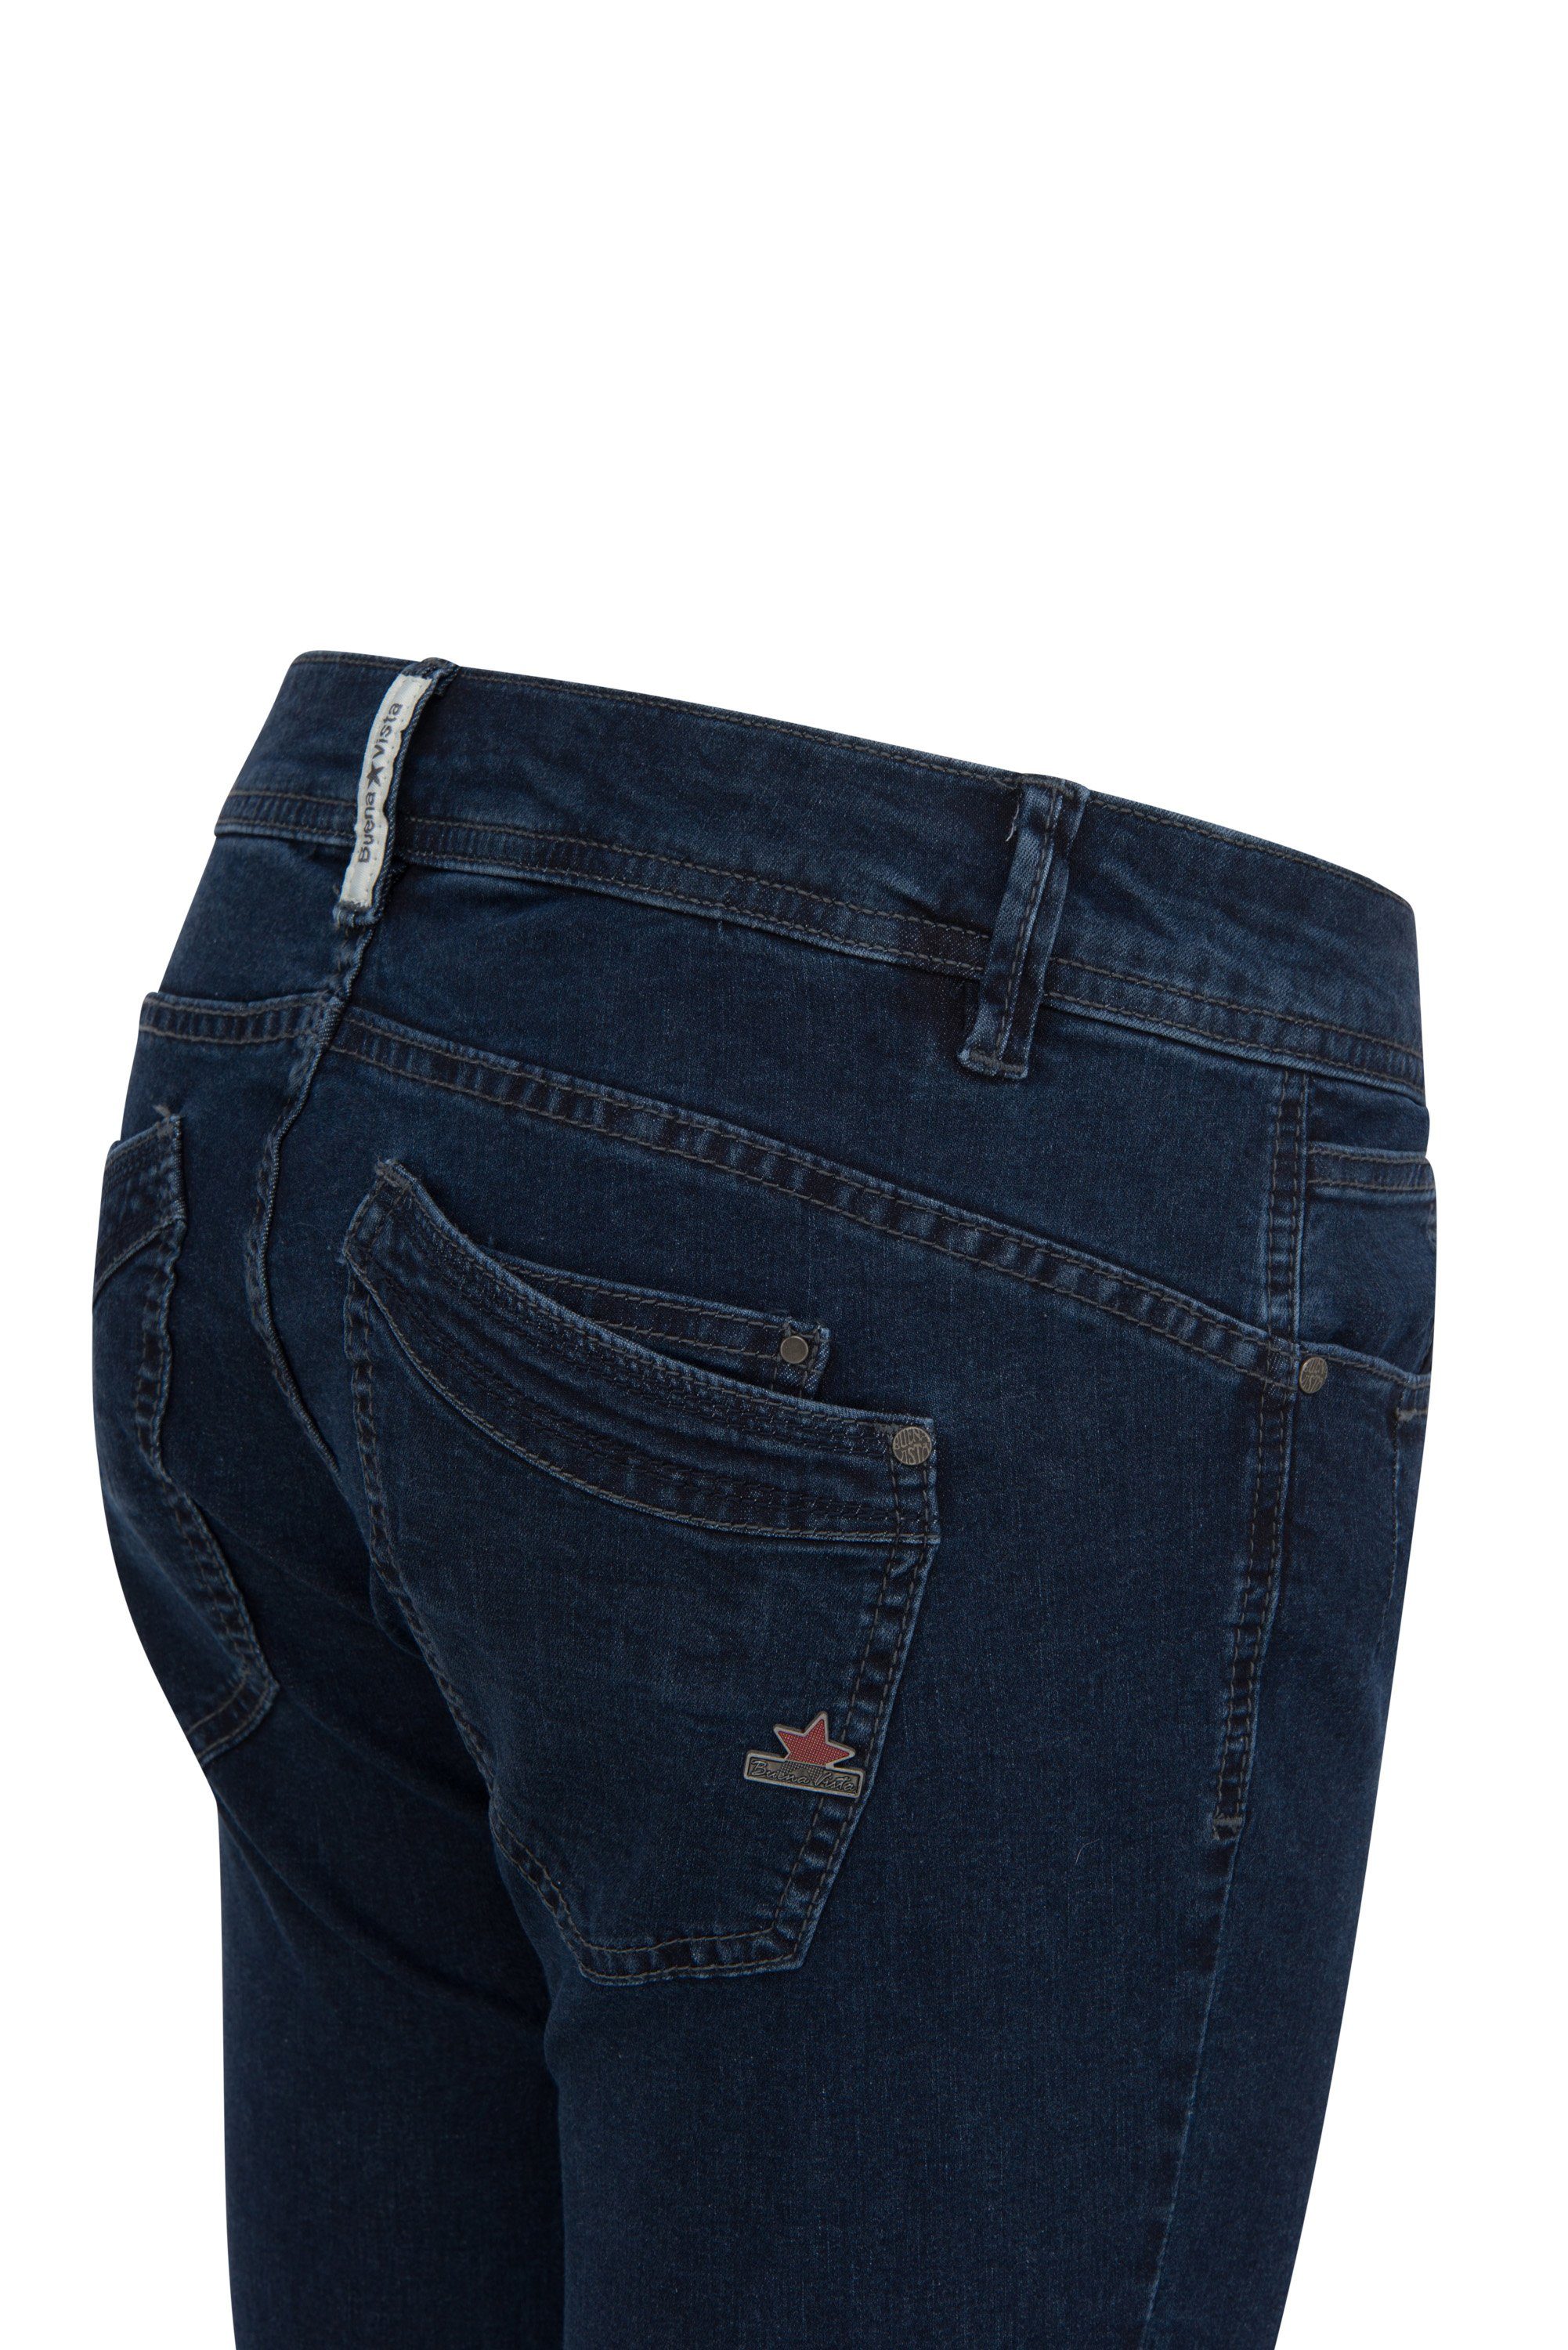 Damen Jeans Buena Vista Stretch-Jeans BUENA VISTA MALIBU CAPRI raw blue 2104 J5232 212.1